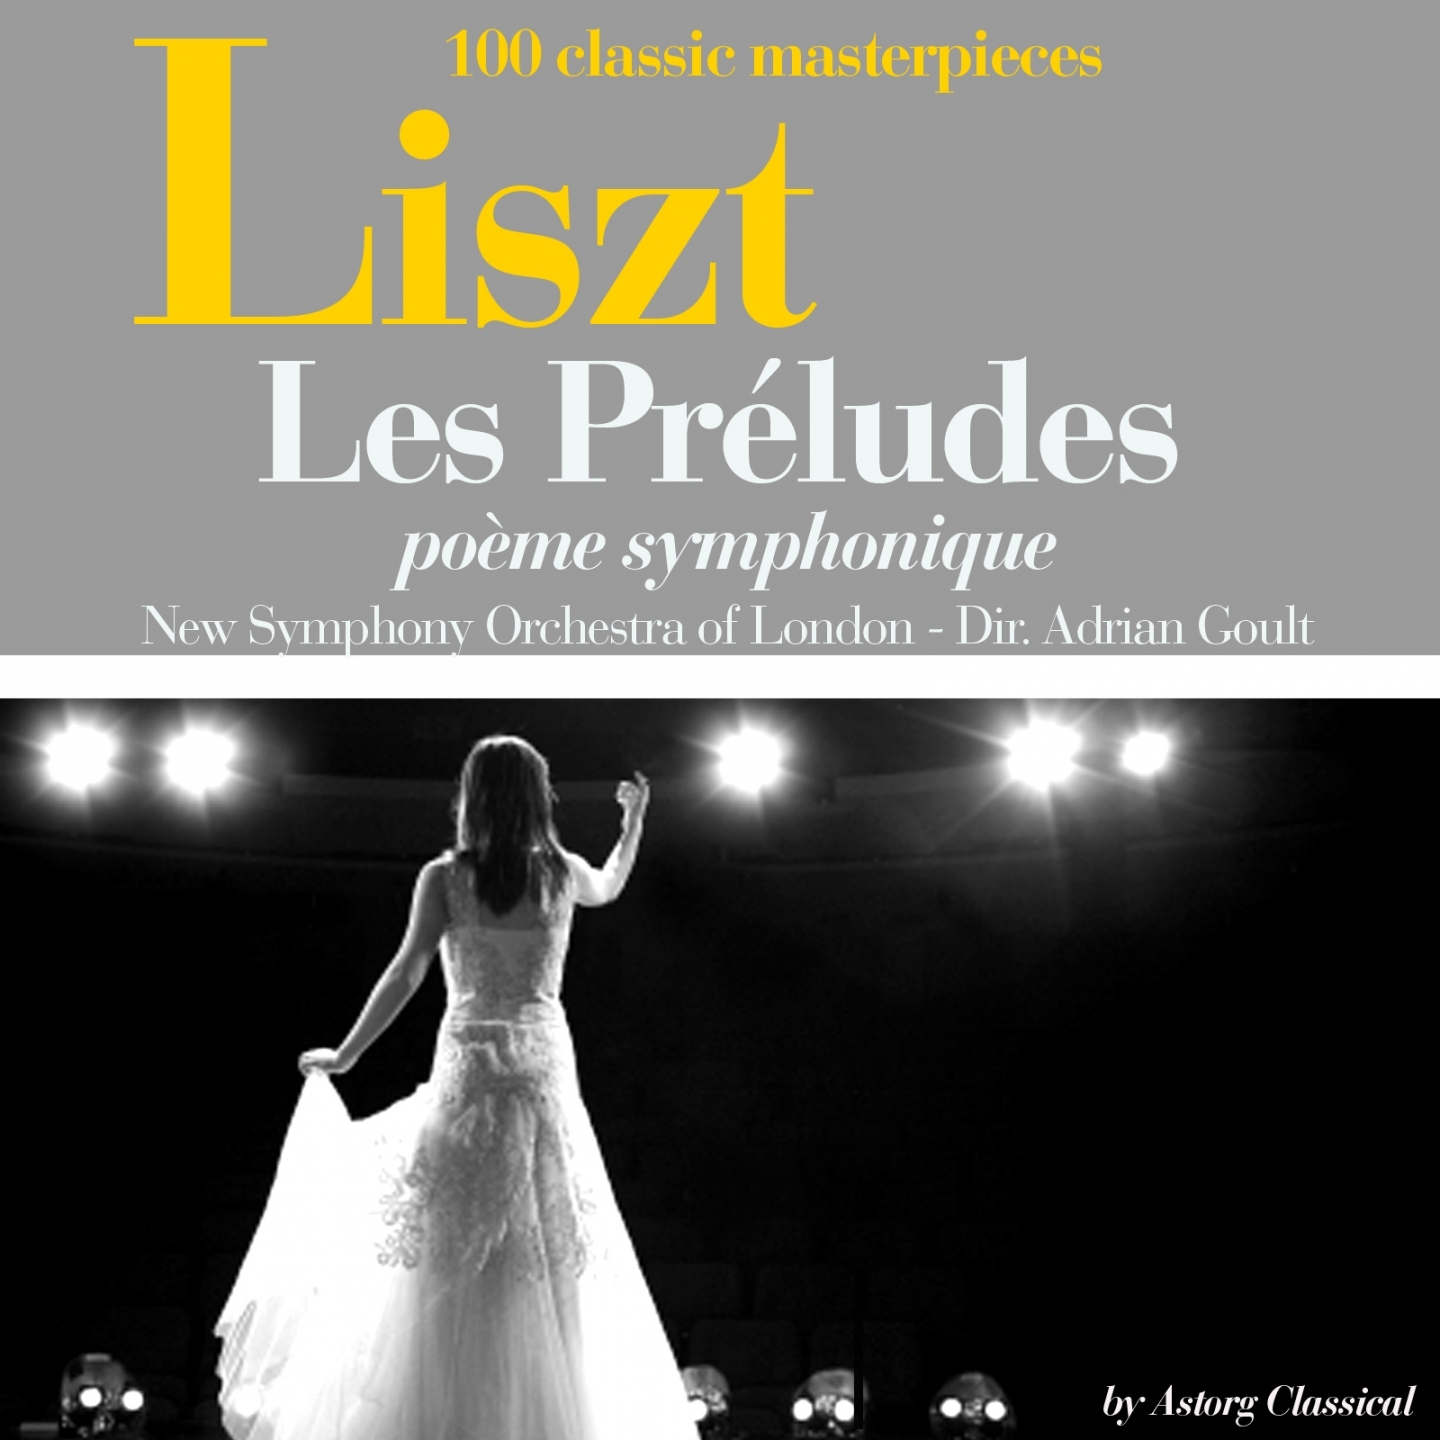 Liszt : Les préludes, poème symphonique (100 classic masterpieces)